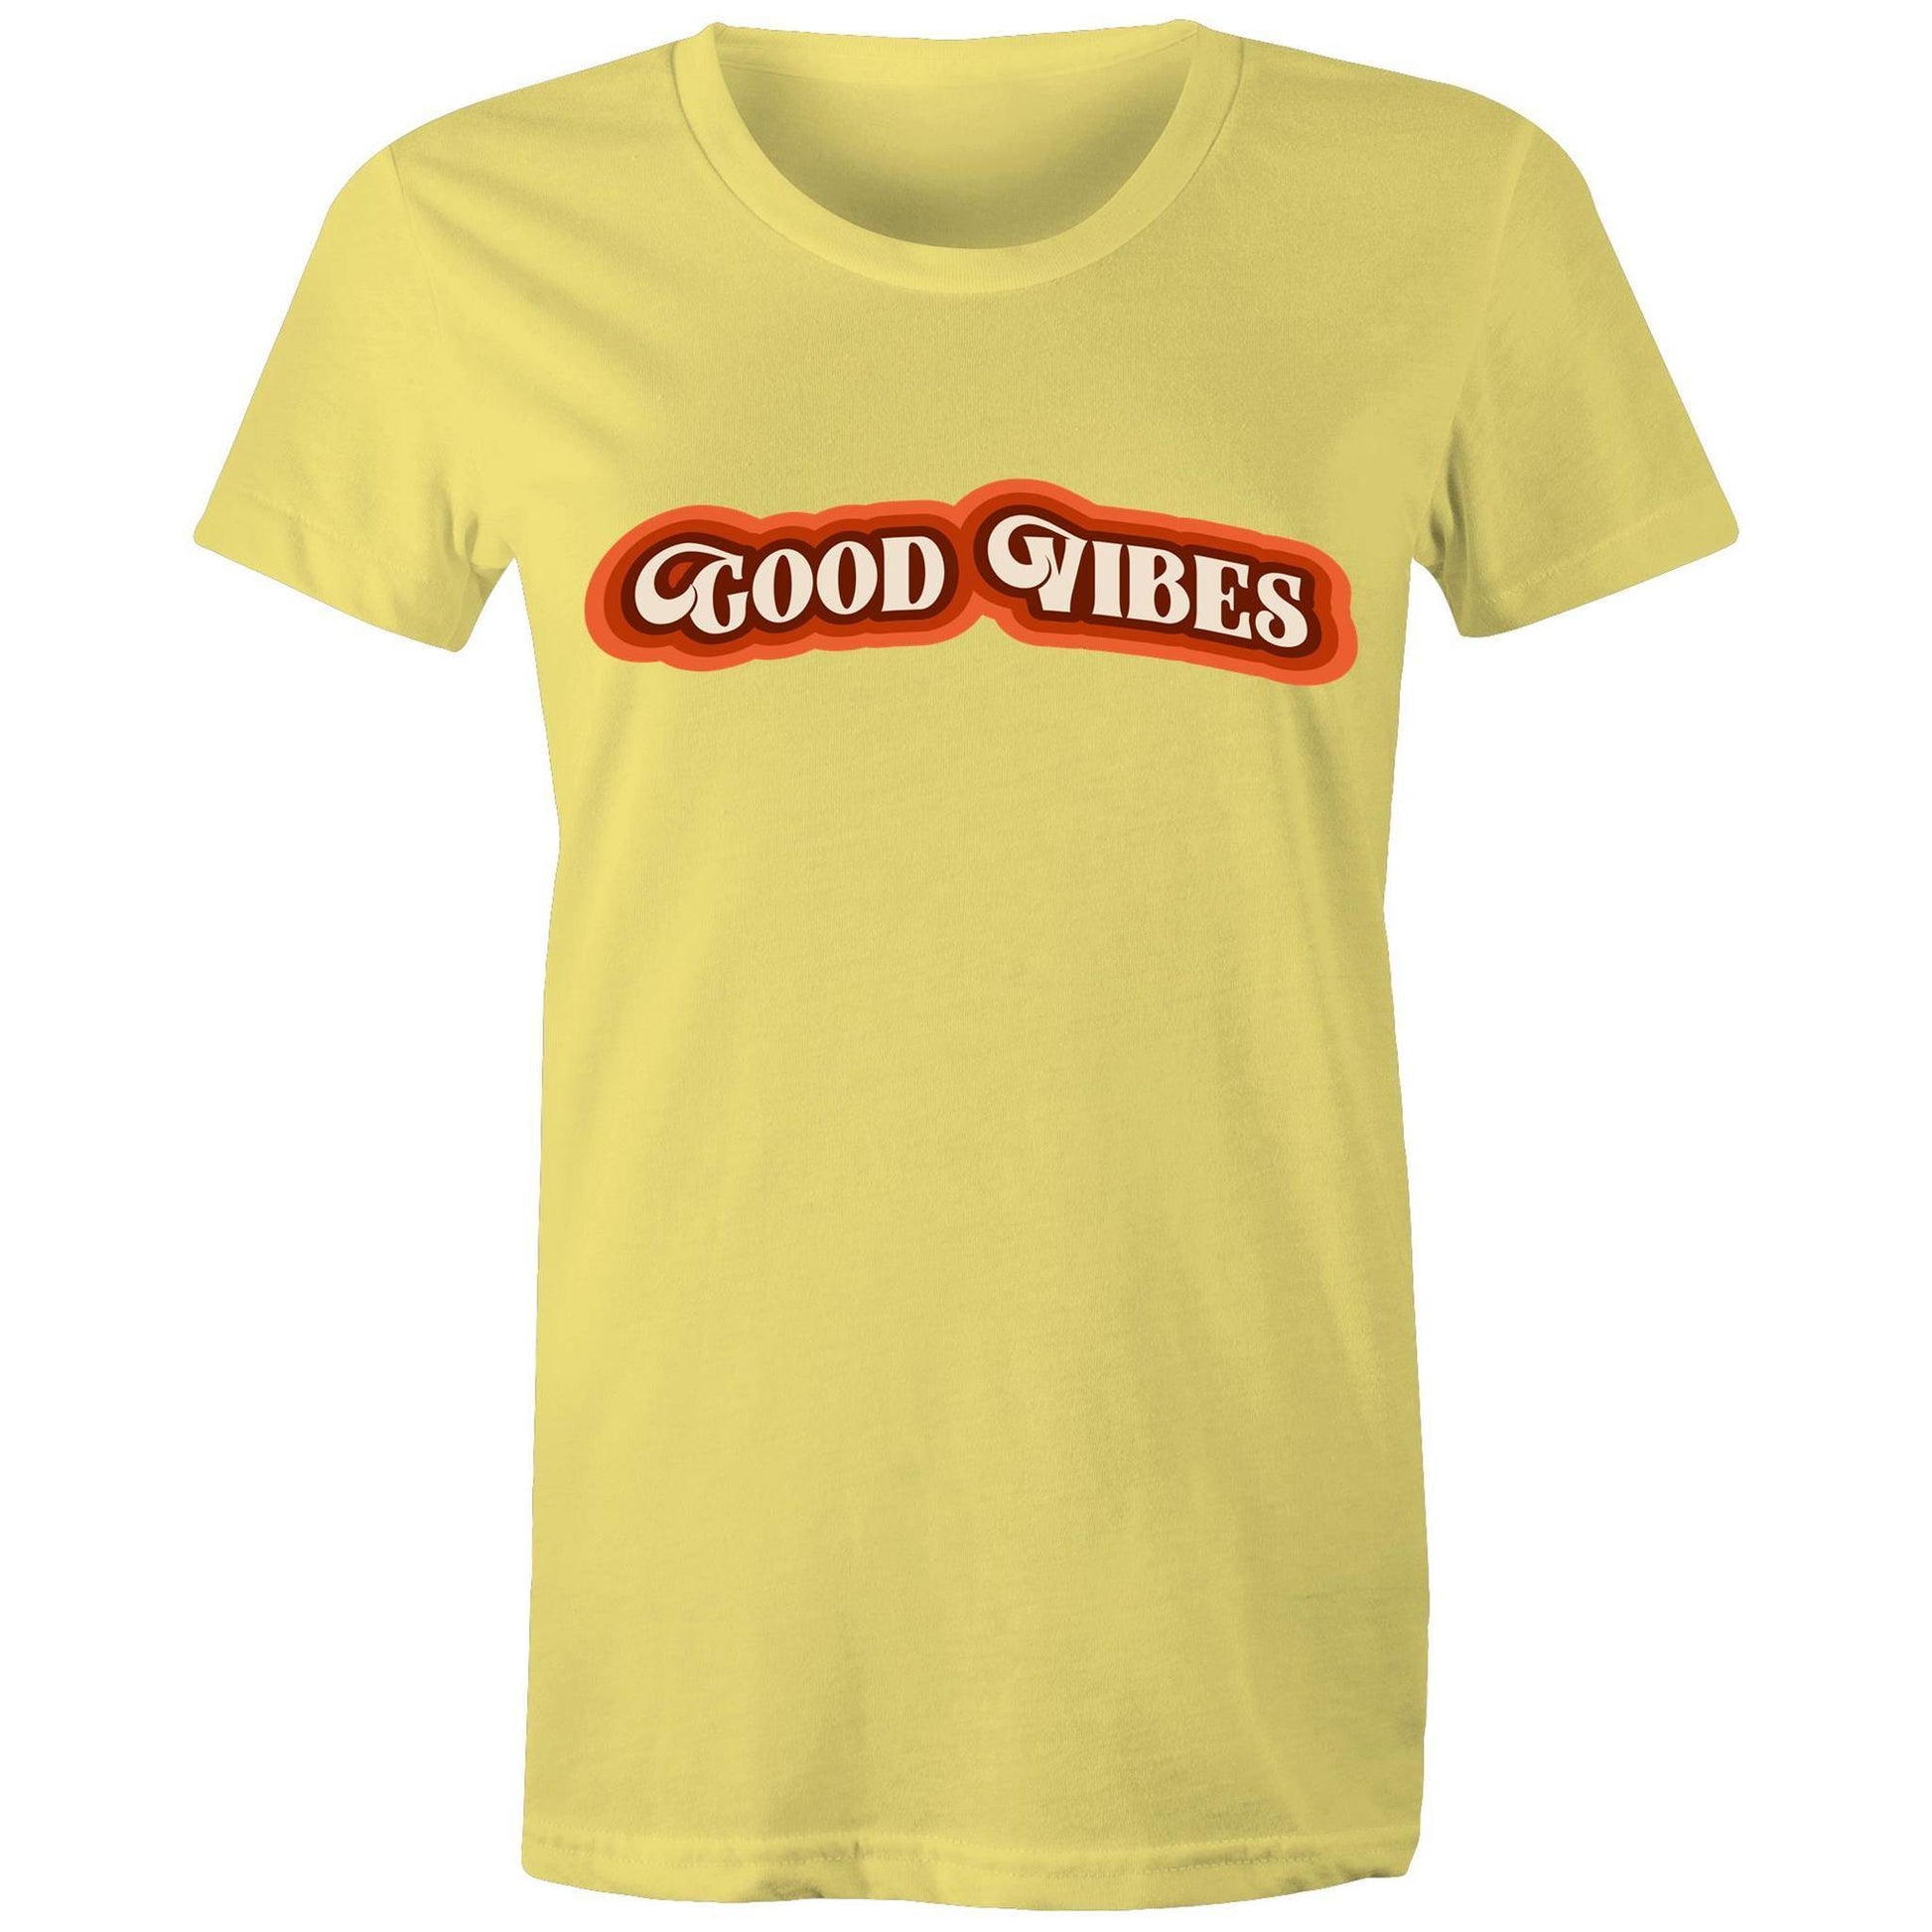 Good Vibes - Women's T-shirt Yellow Womens T-shirt Retro Womens